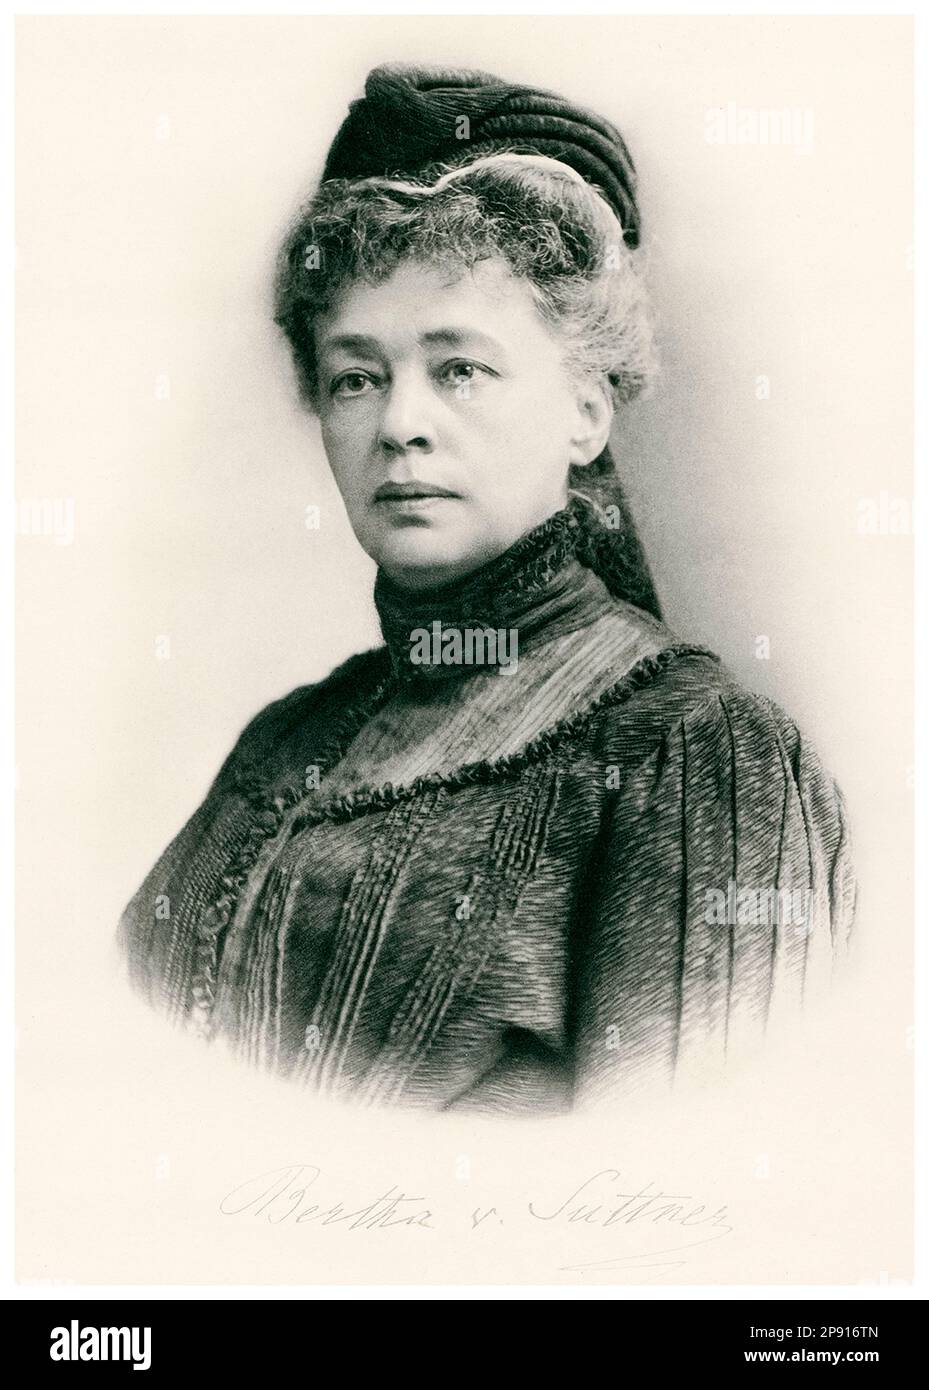 Bertha von Suttner (1843-1914), österreichisch-böhmische Pazifistin und Schriftstellerin, erste Frau, die den Friedensnobelpreis erhalten hat, Porträtfoto von Carl Pietzner, ca. 1900 Stockfoto